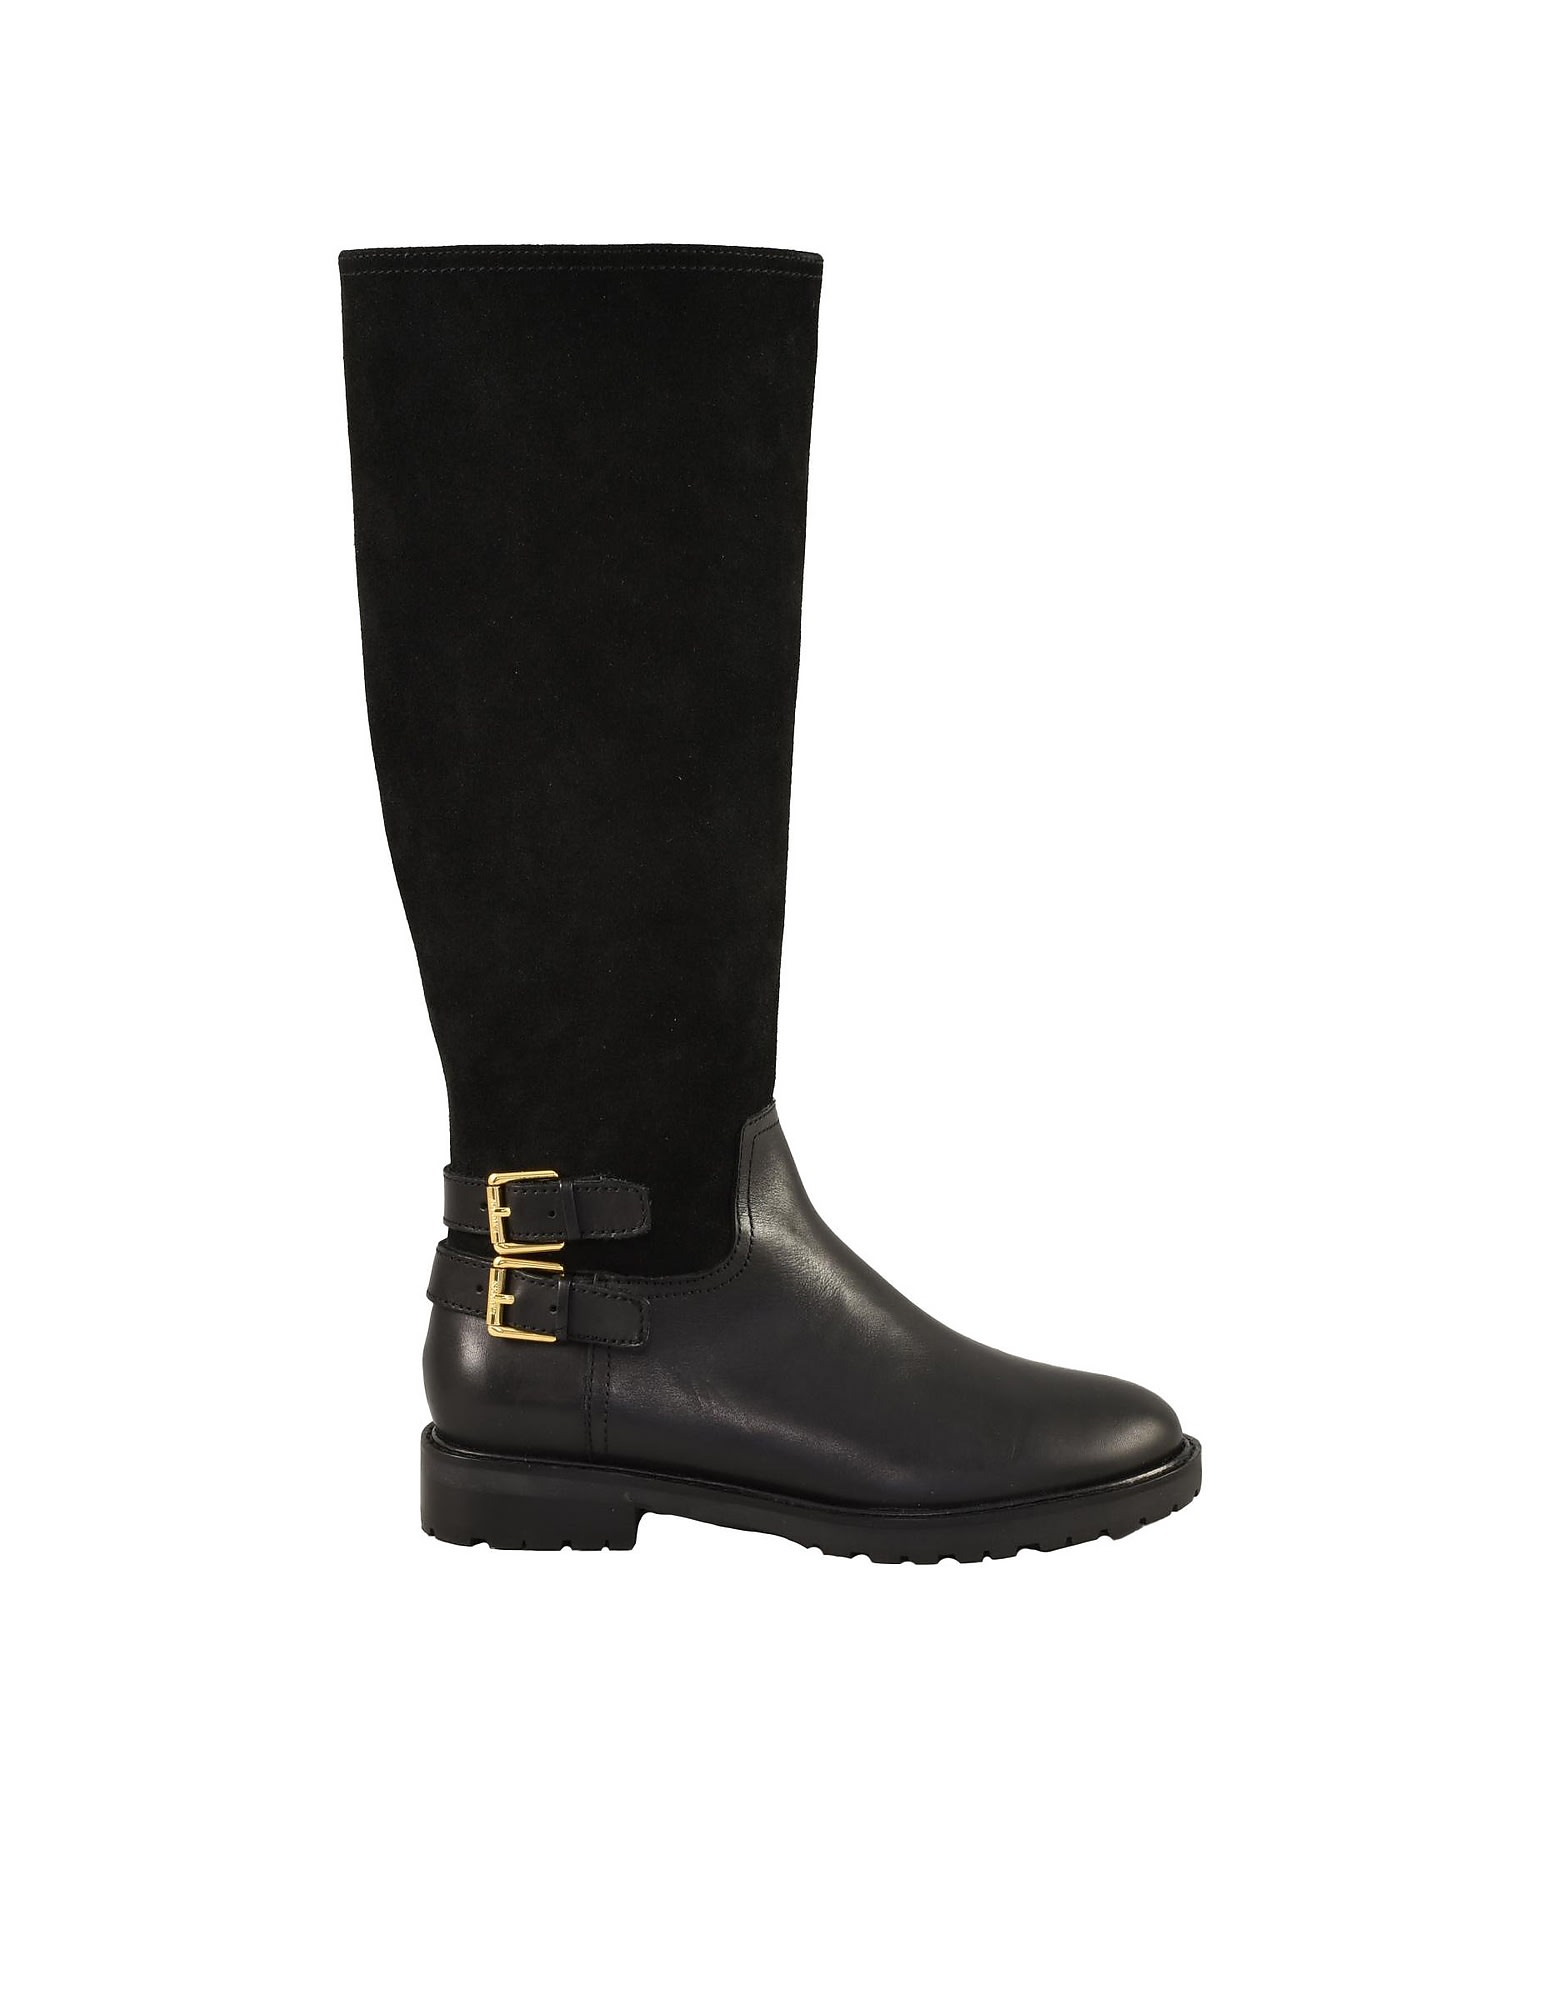 Ralph Lauren Womens Black Boots